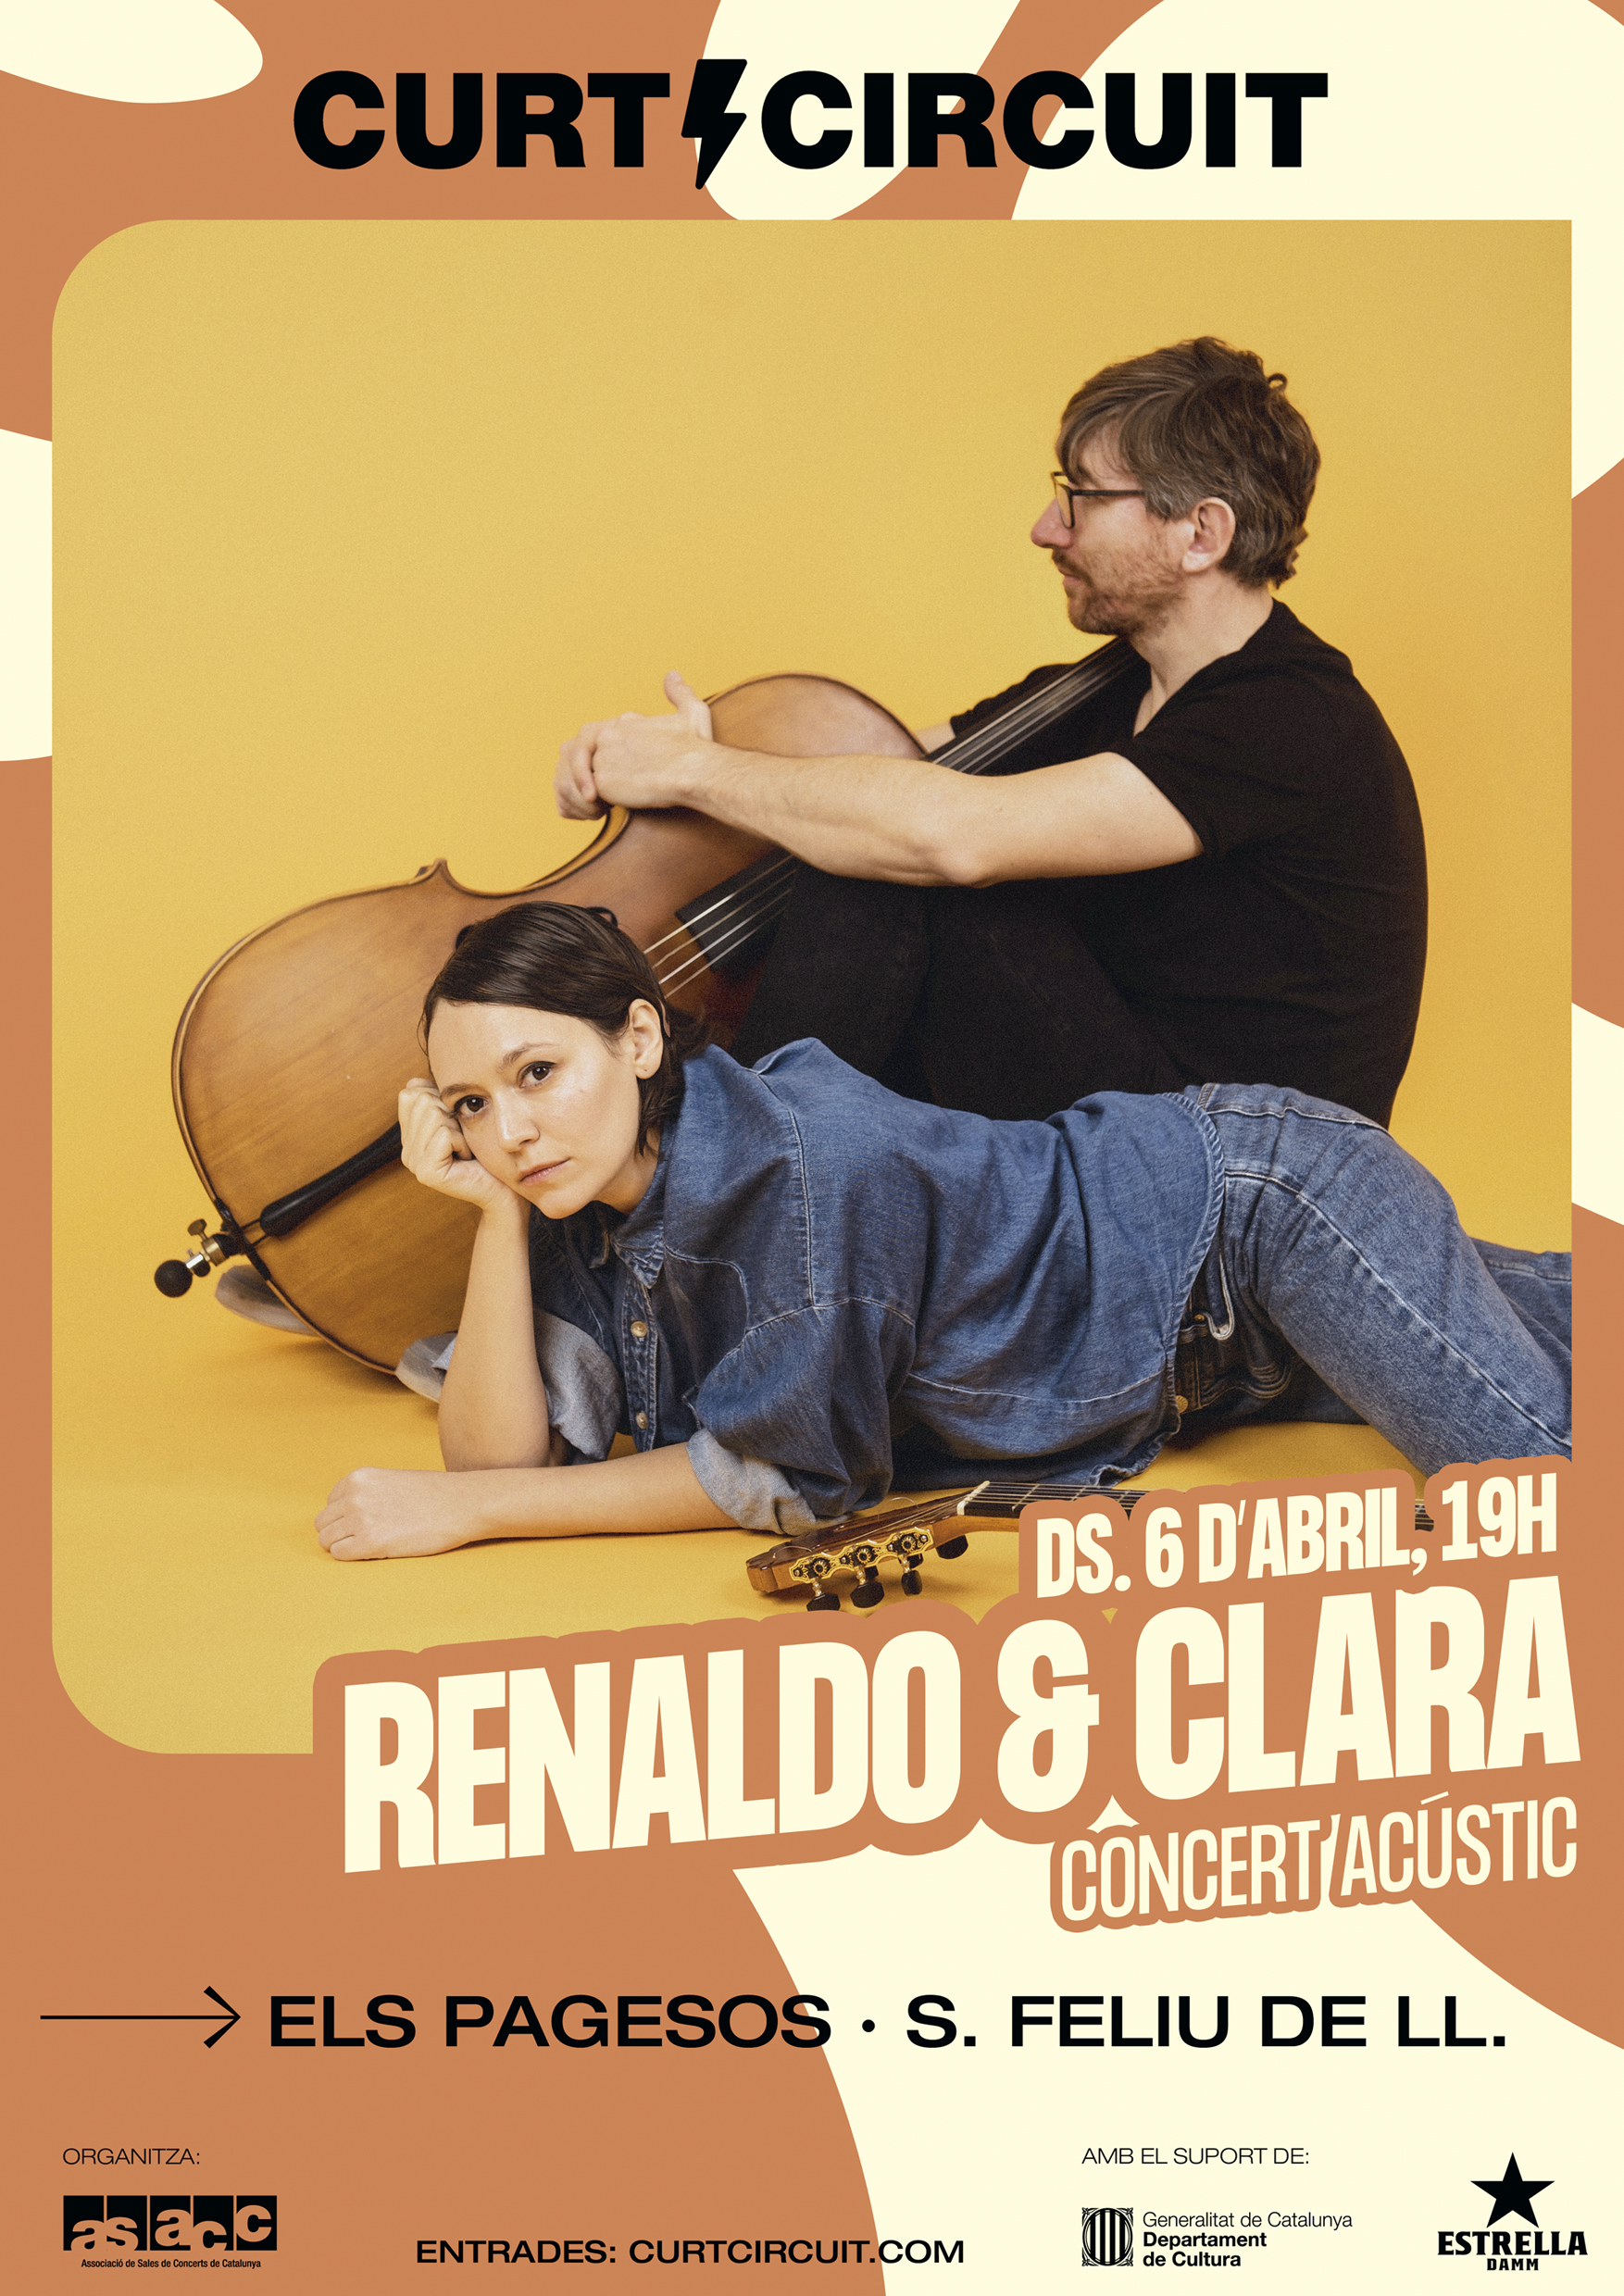 RENALDO & CLARA